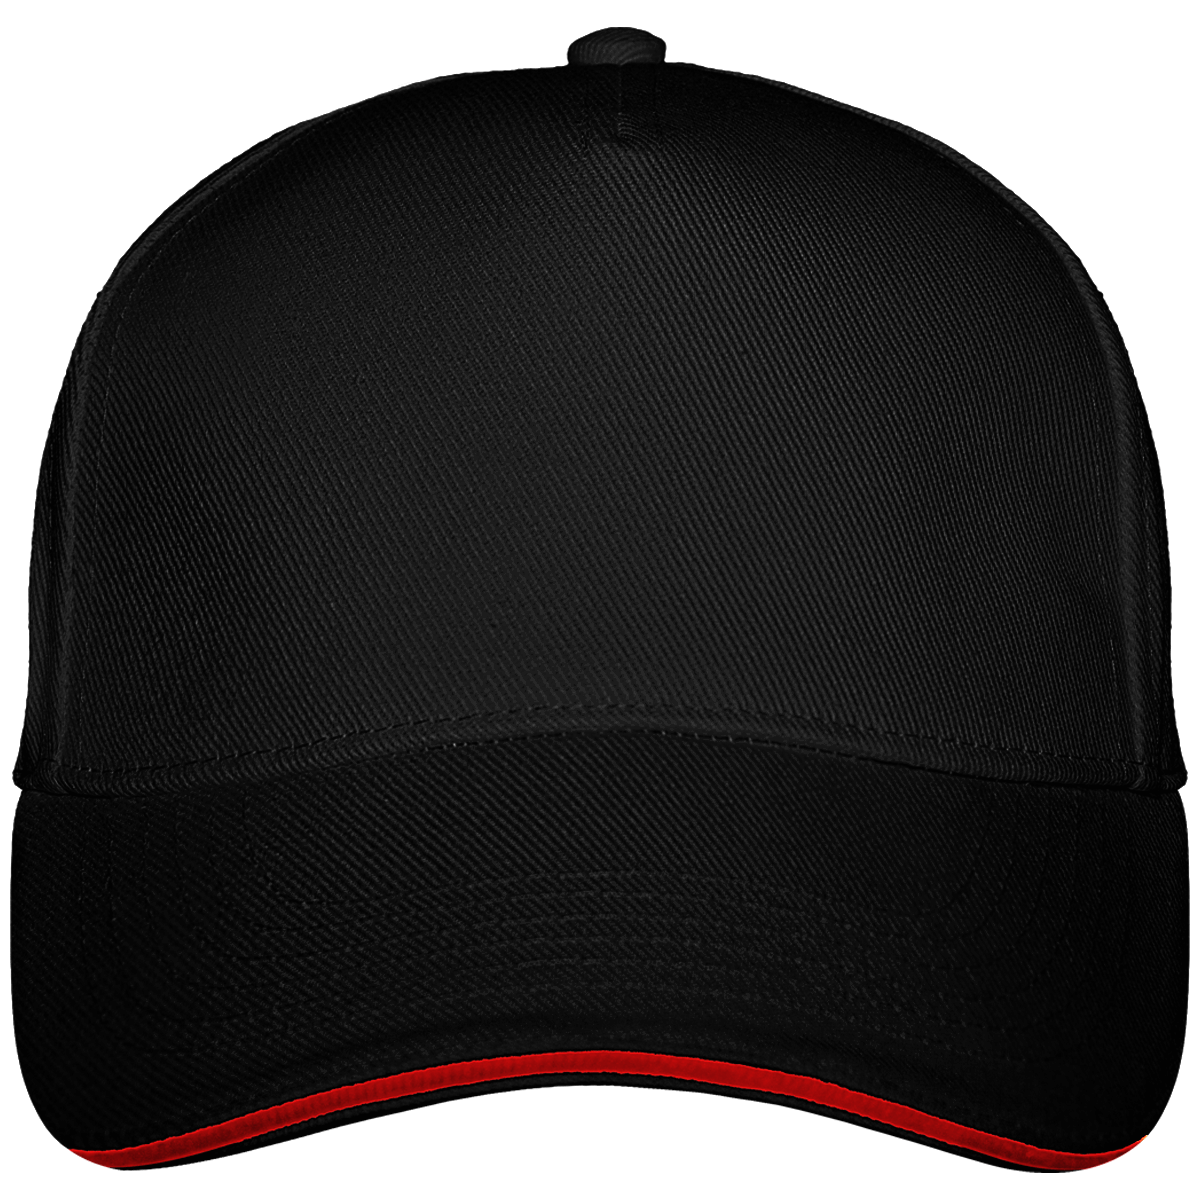 Ultimate 5 Panel Custom Cap Black / Classic Red